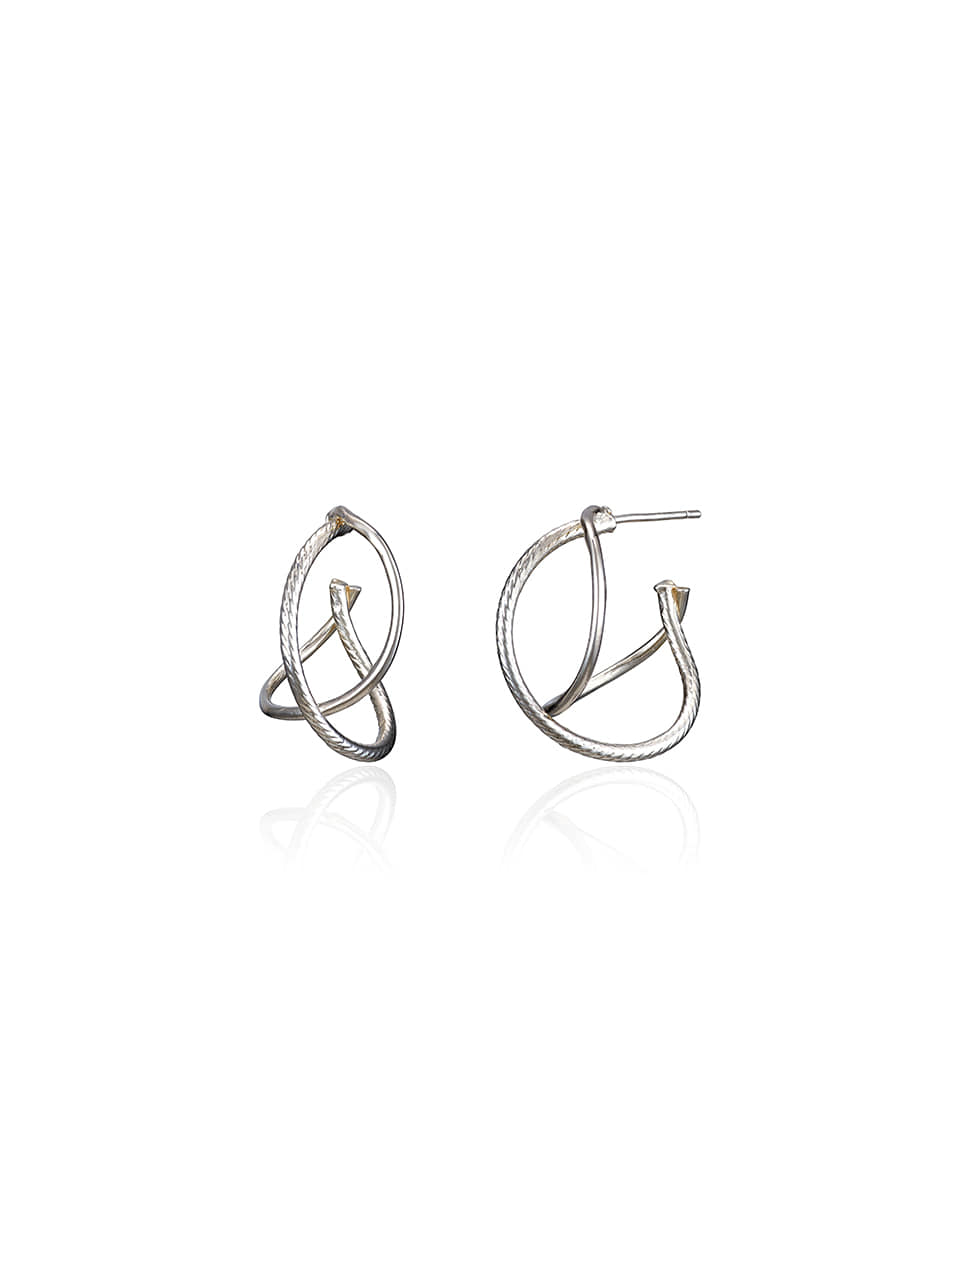 [silver925]fine line hoop earring